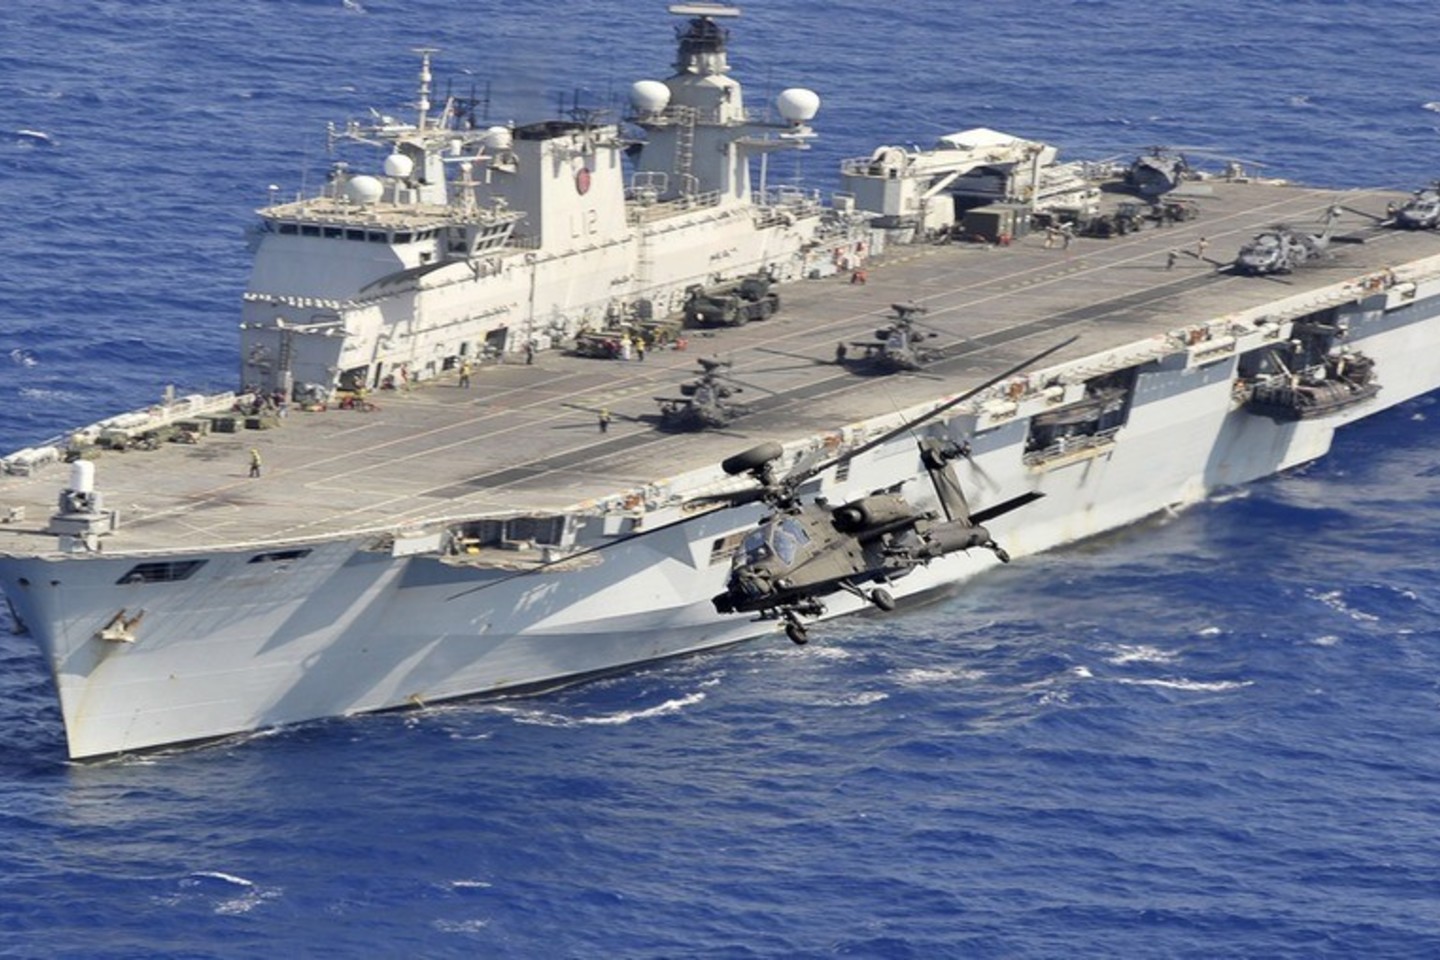 Jungtinė Karalystė į tarptautines pratybas siunčia savo Karališkojo Laivyno flagmaną – desantinį laivą „HMS Ocean“<br>Royal Navy nuotr.